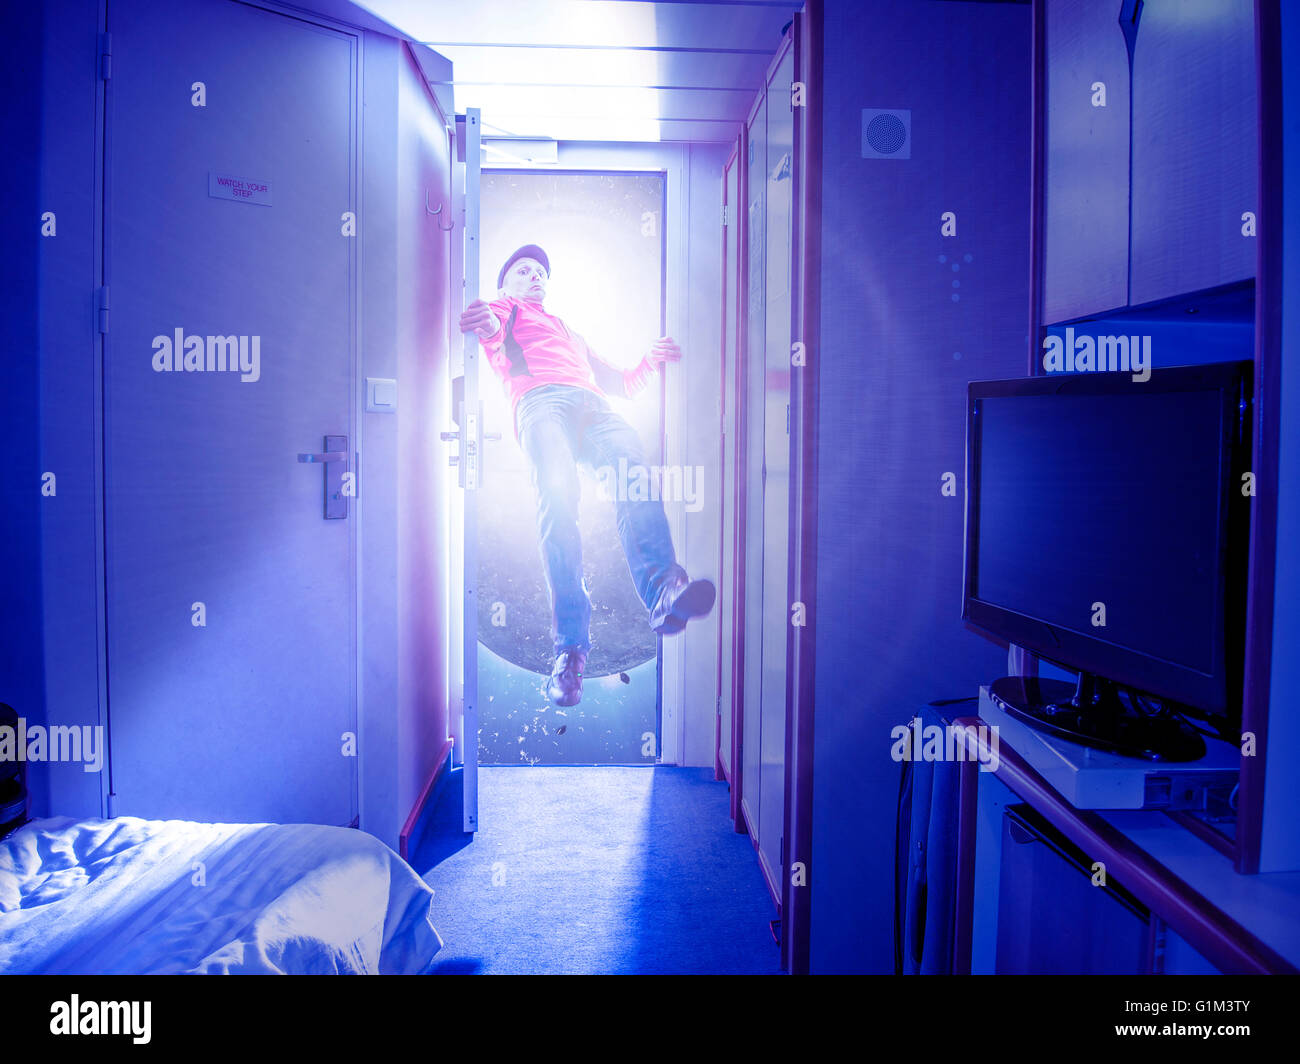 Caucasian man flying in bedroom Stock Photo